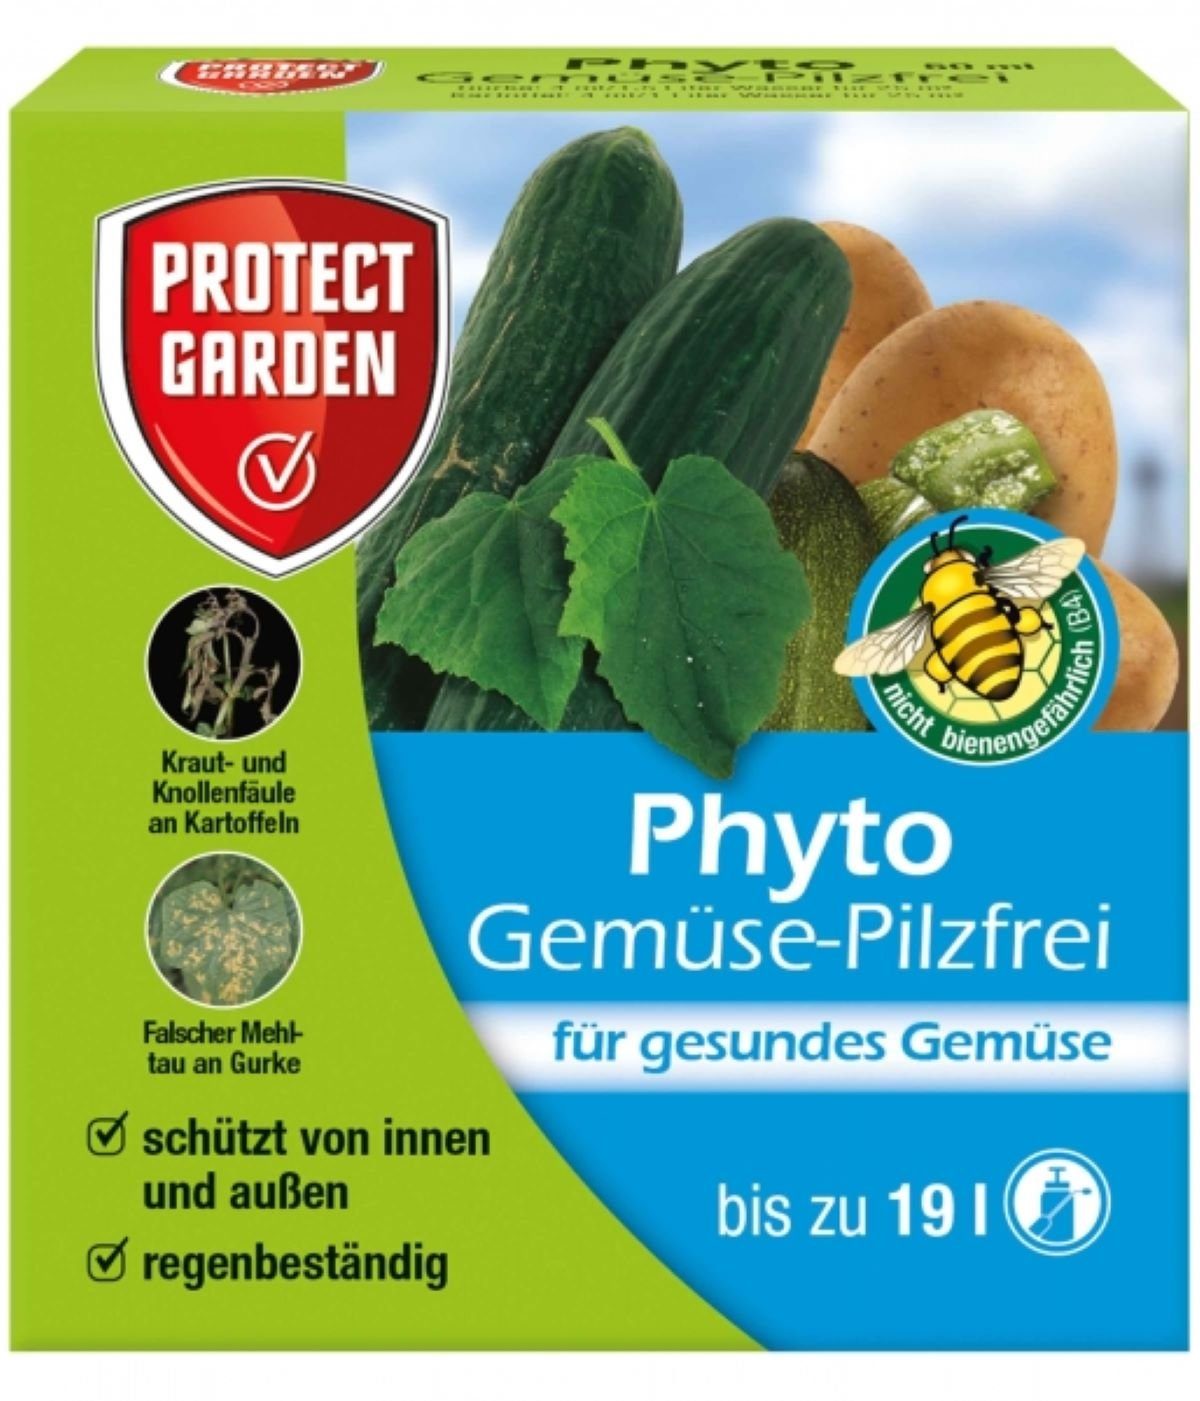 Protect Garden Gartenbau-Vermiculite Gemüse Pilzfrei für Gesundes Gemüse, (1-St), Pilzkrankheiten bei Gurken, Zucchini